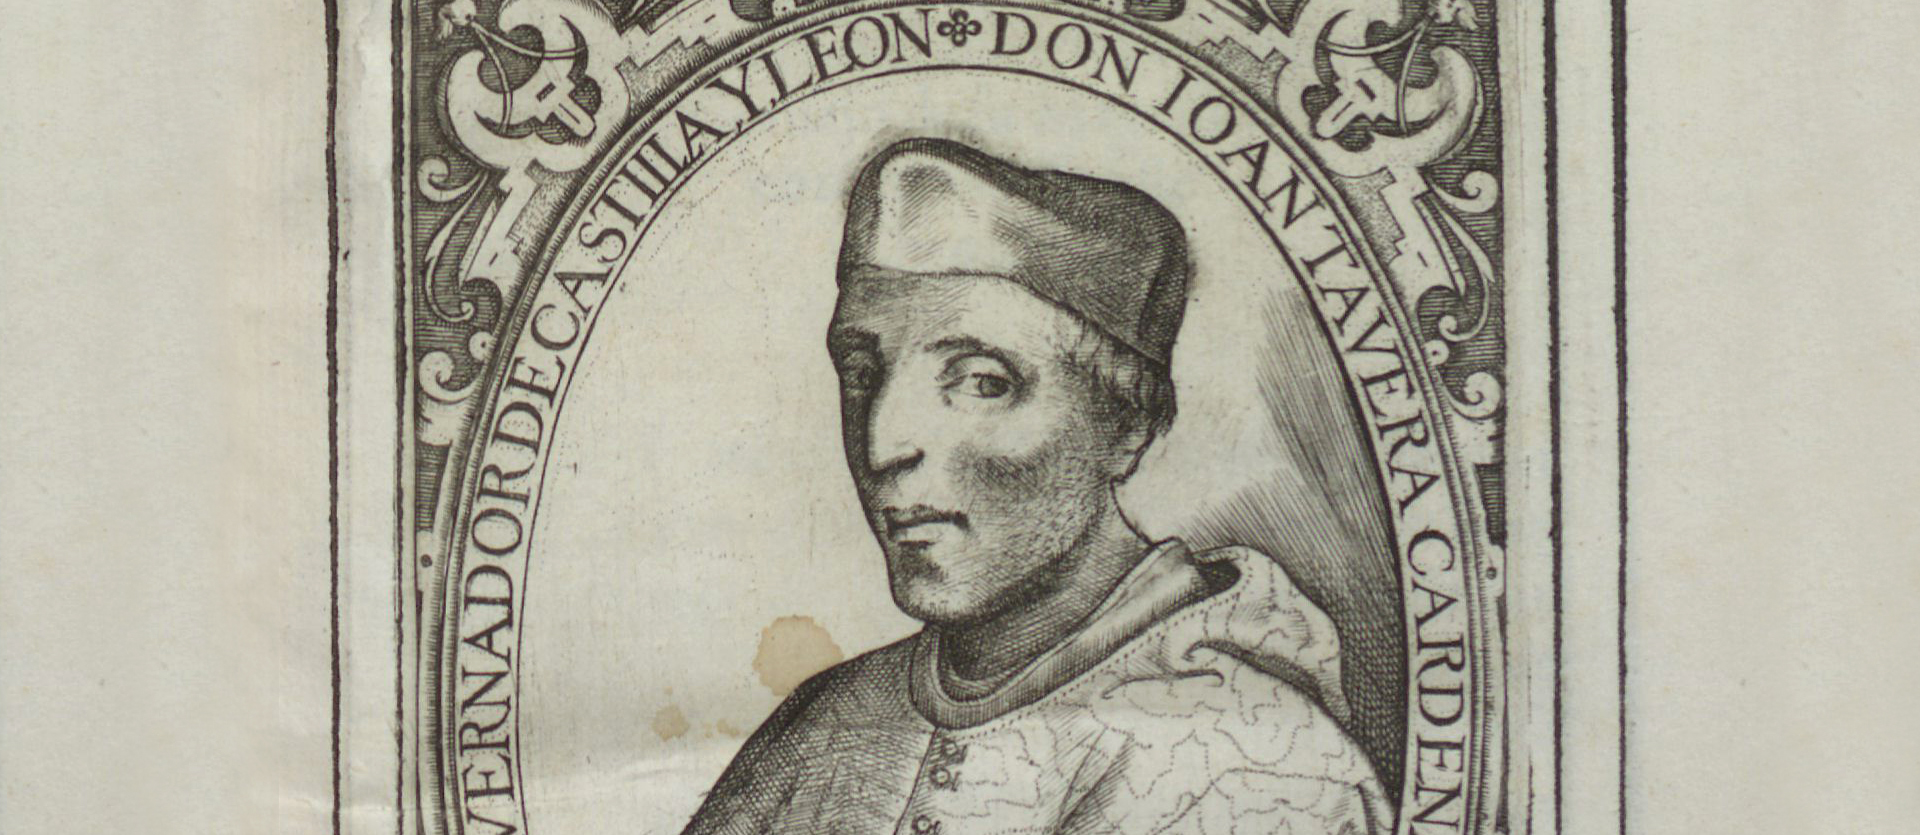 Ritratto del cardinale arcivescovo di Toledo, Juan Pardo Tavera. Incisione tratta dal libro Chronico de el Cardenal don Juan Tavera, 1603.